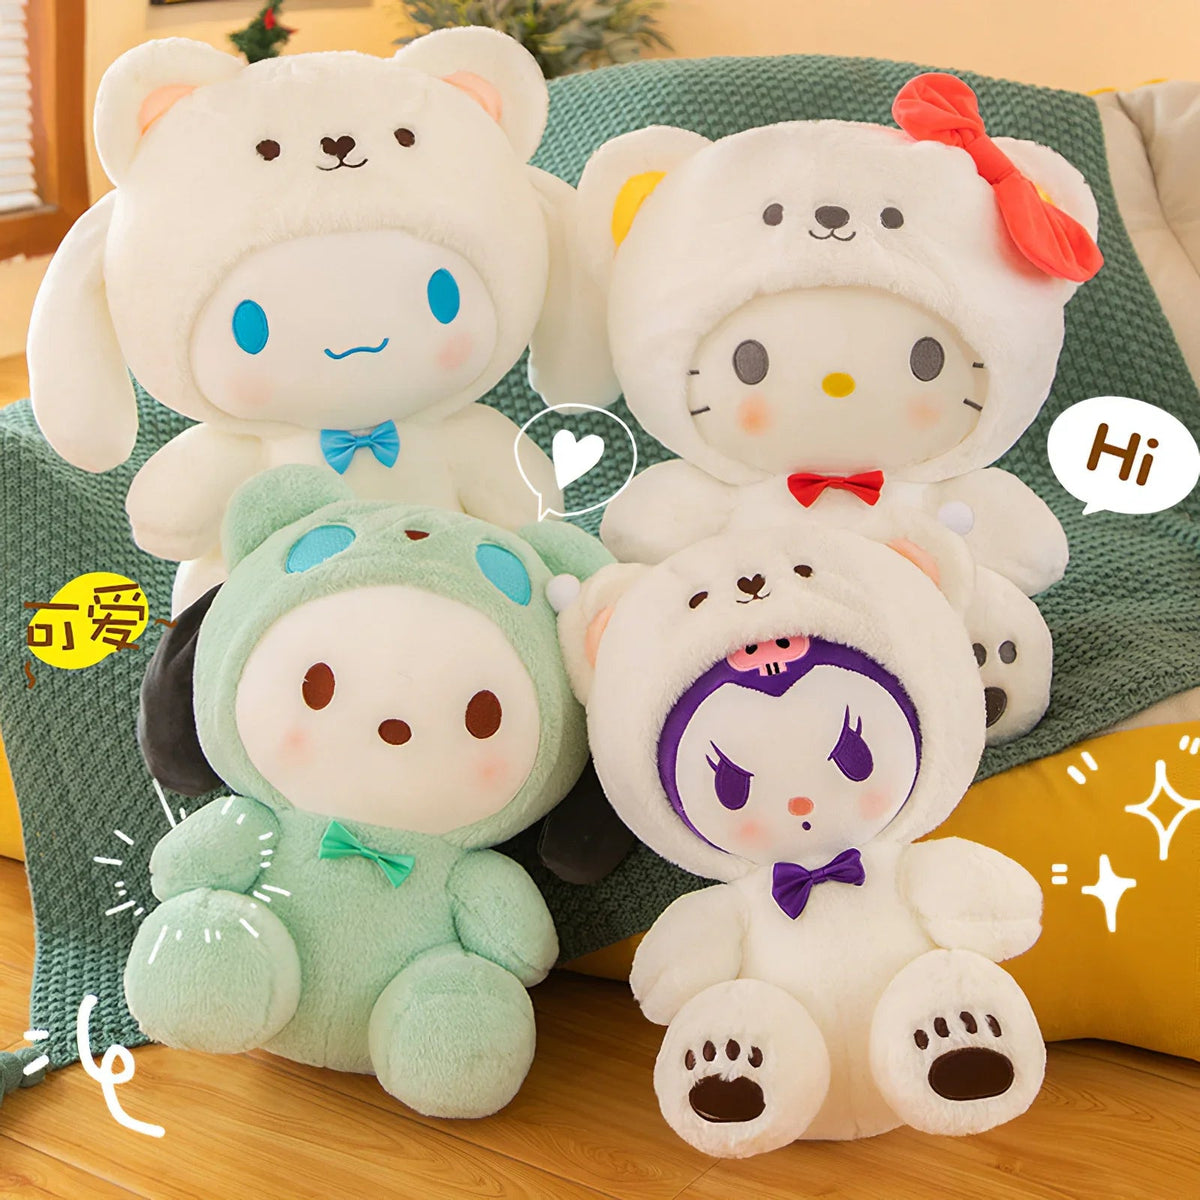 Kurumi Hello Kittykuromi Plush Toy - Large Sanrio Stuffed Animal For  Bedroom & Decor